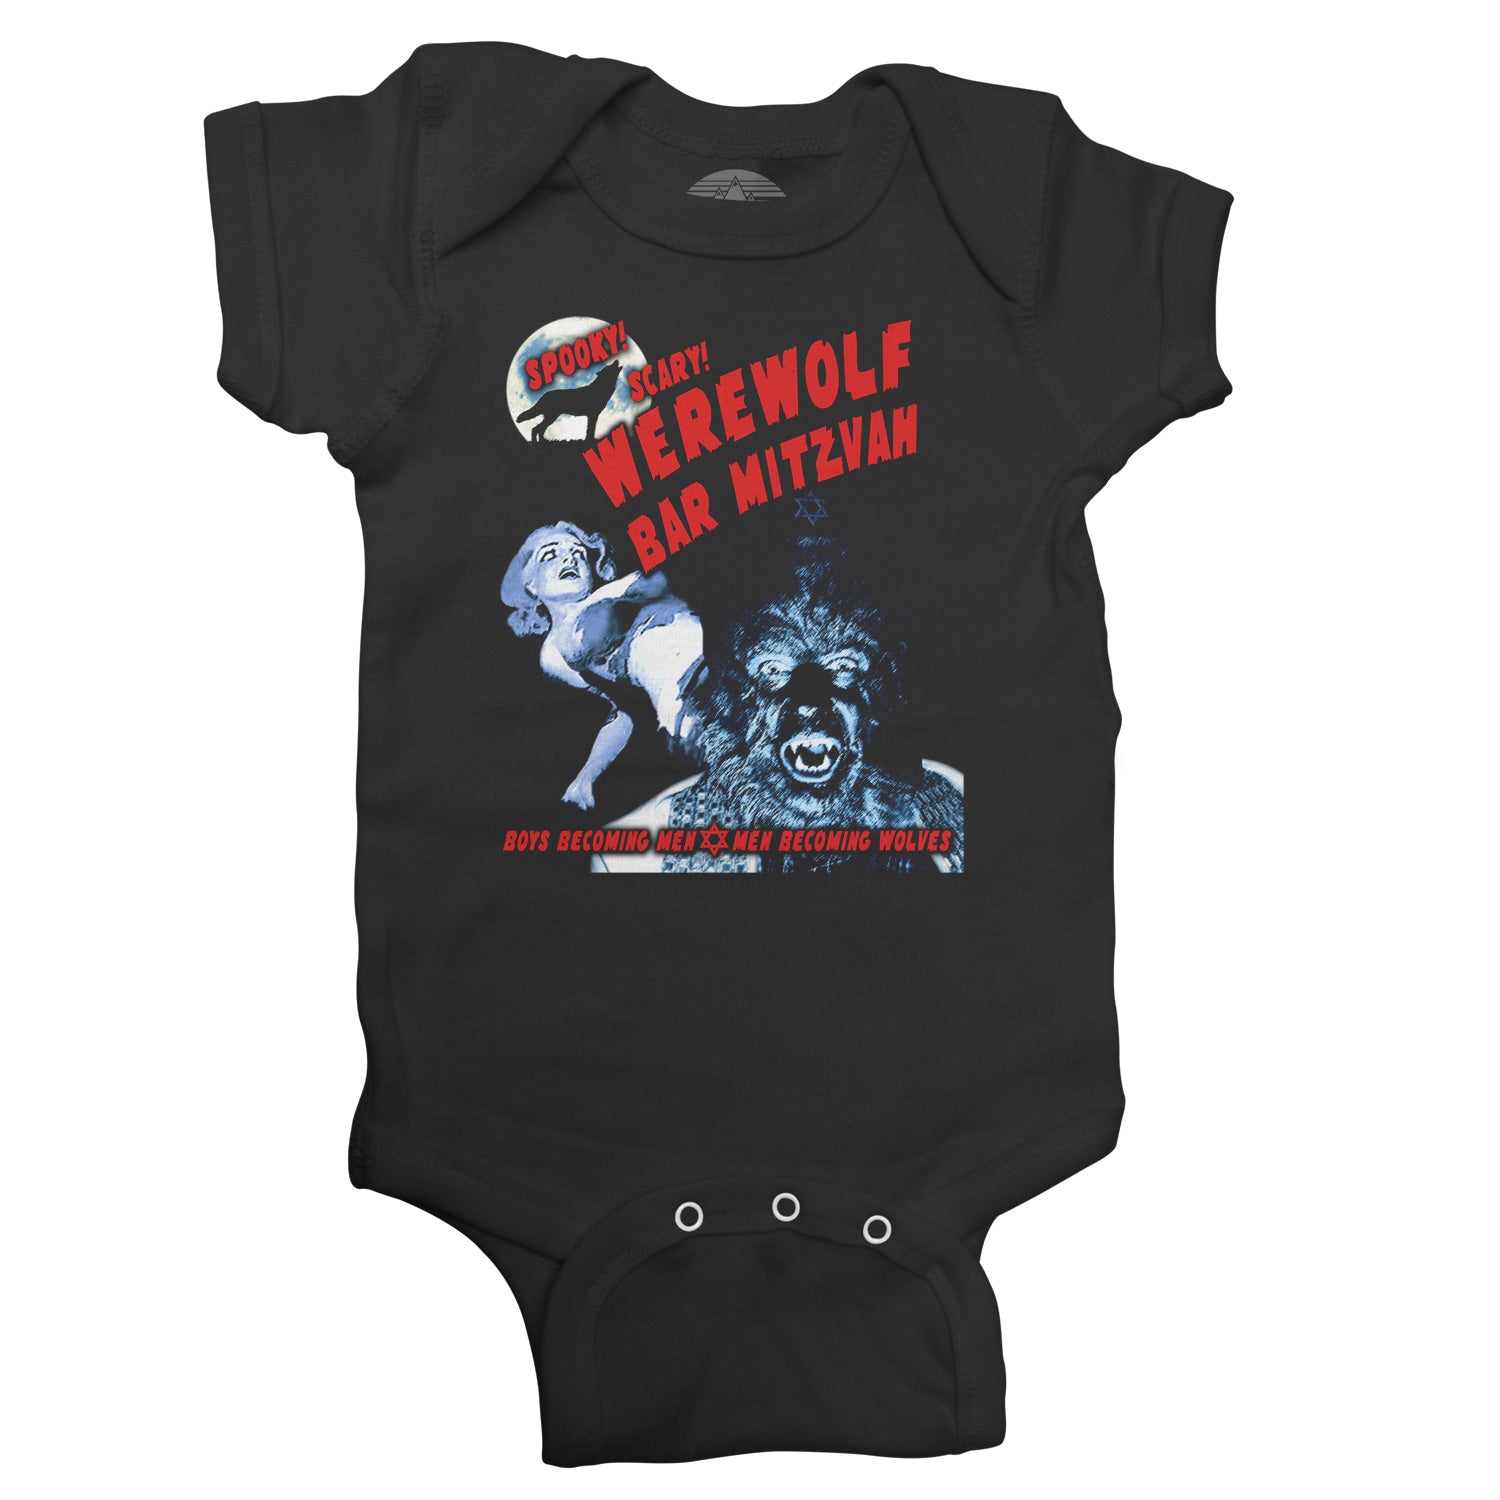 Werewolf Bar Mitzvah Infant Bodysuit - Unisex Fit